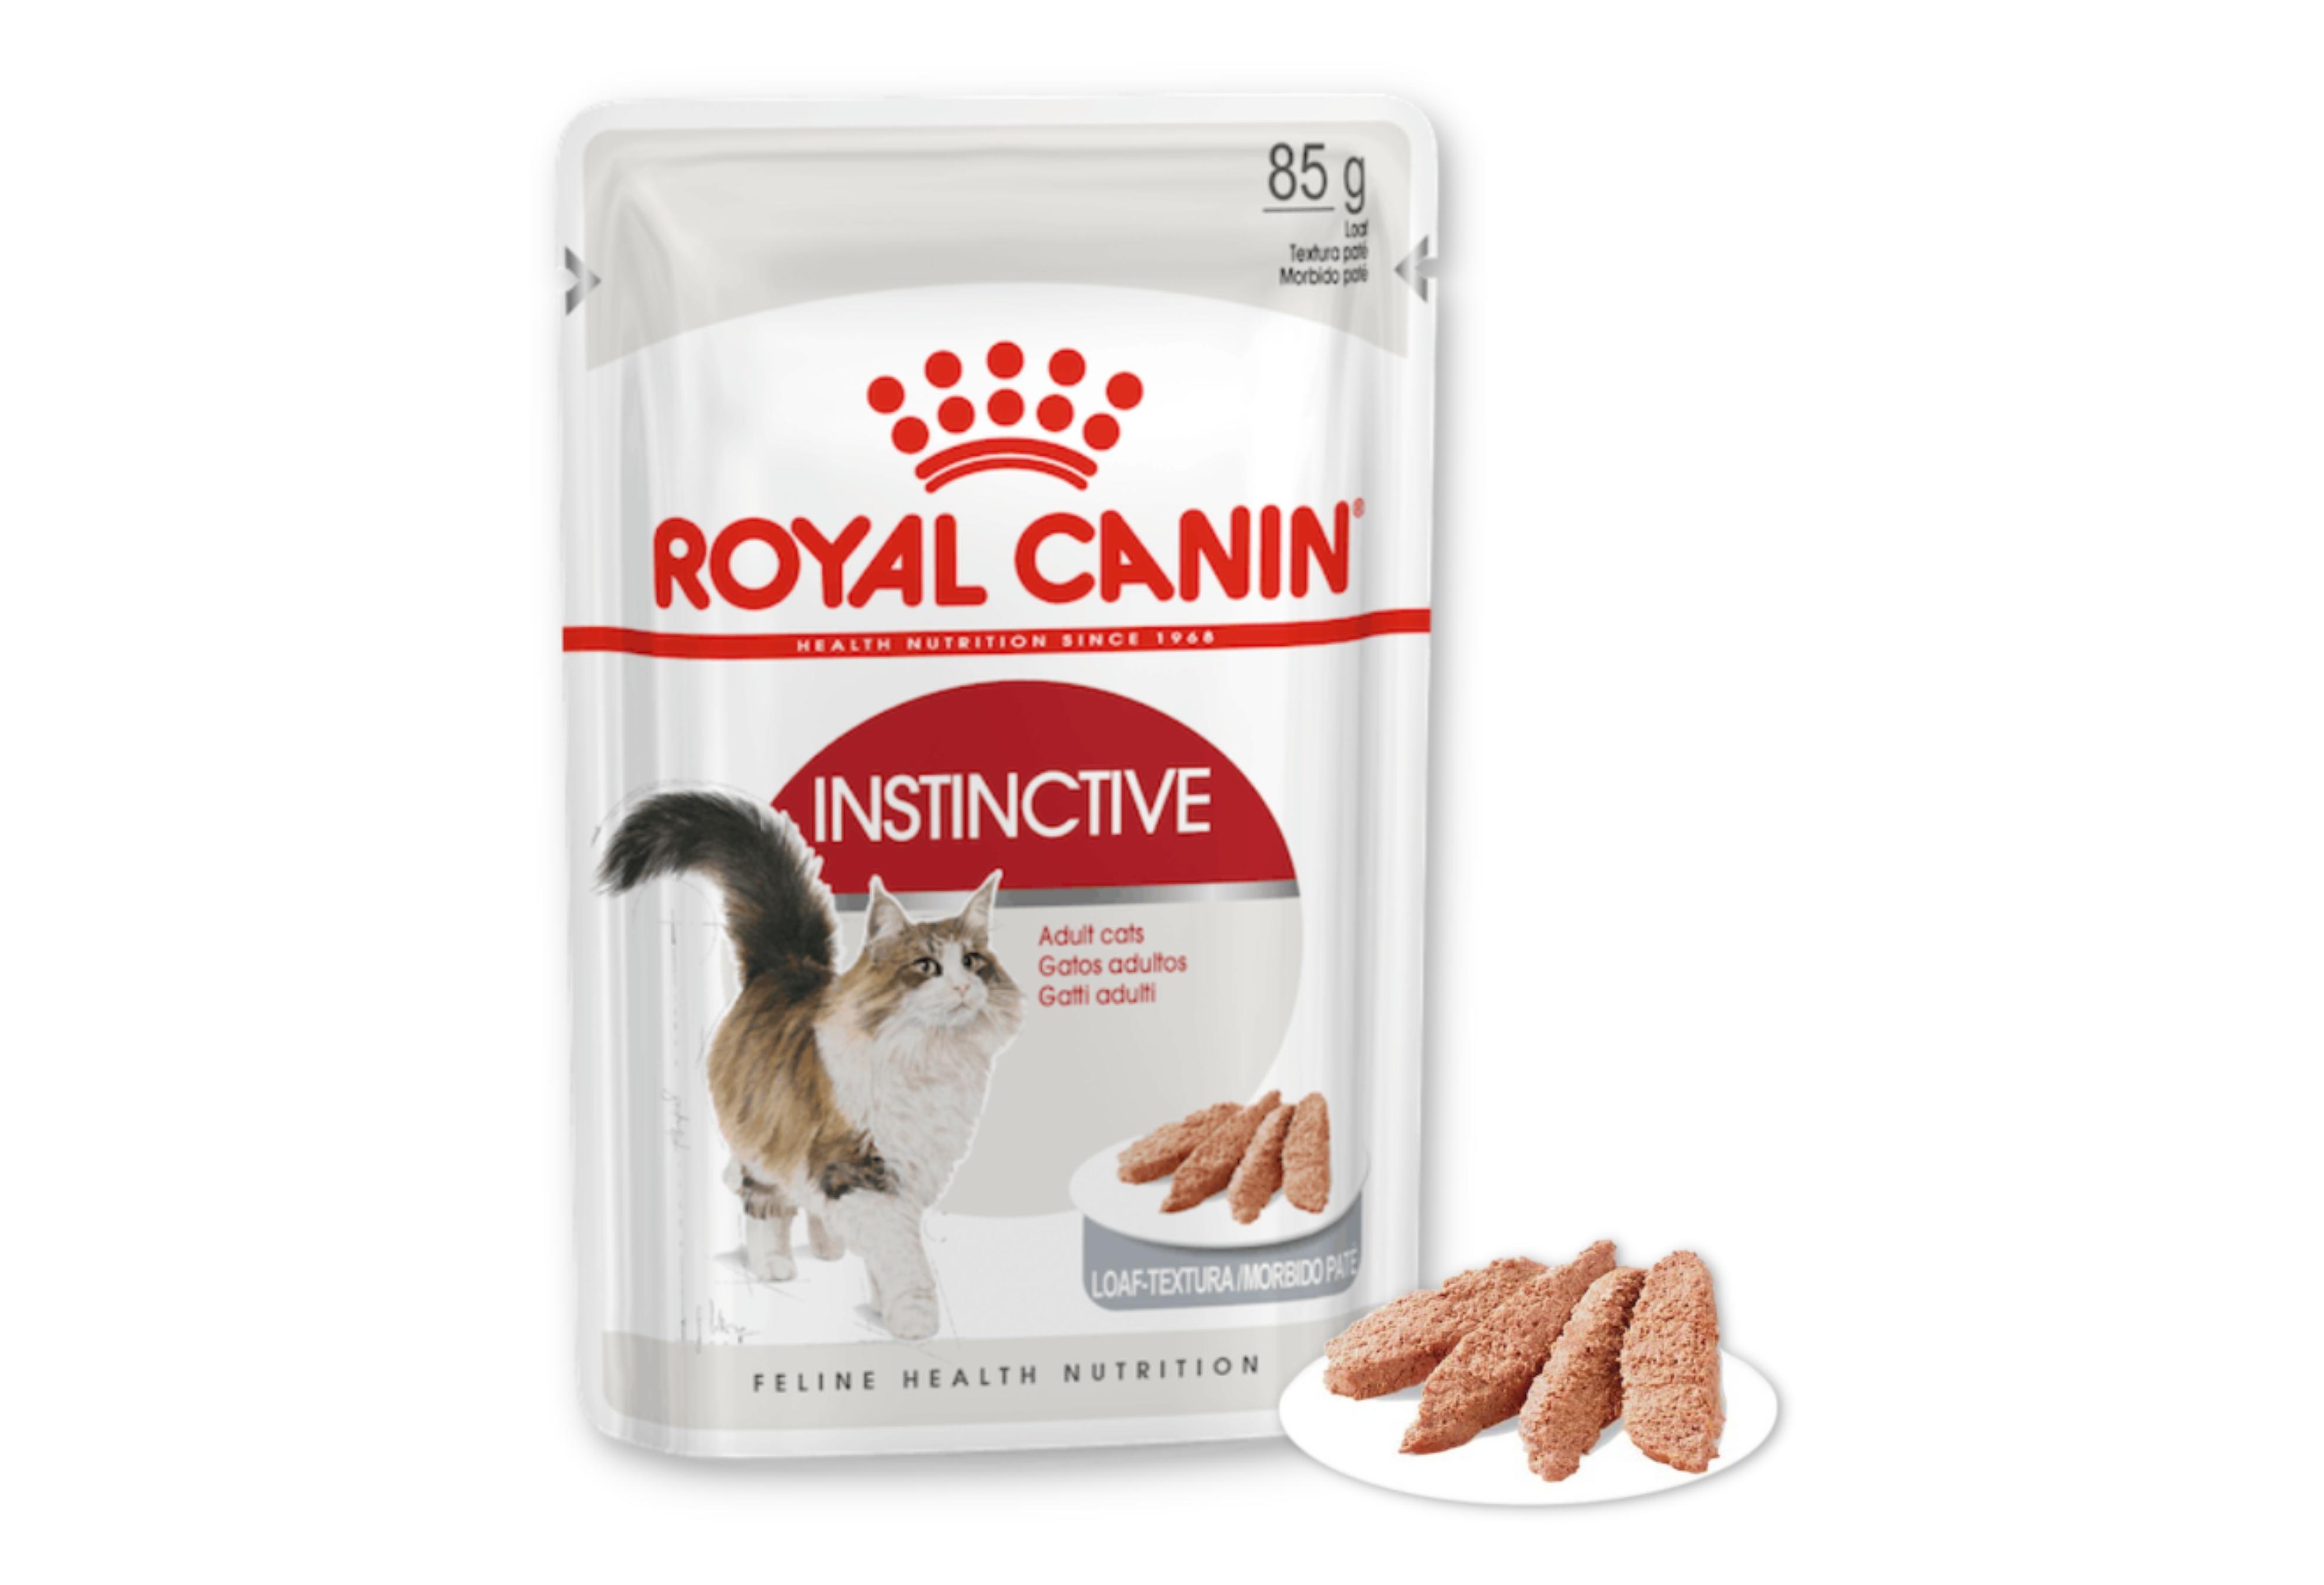 Royal Canin Instinctive (Loaf) - Thức Ăn Ướt Cho Mèo Trưởng Thành